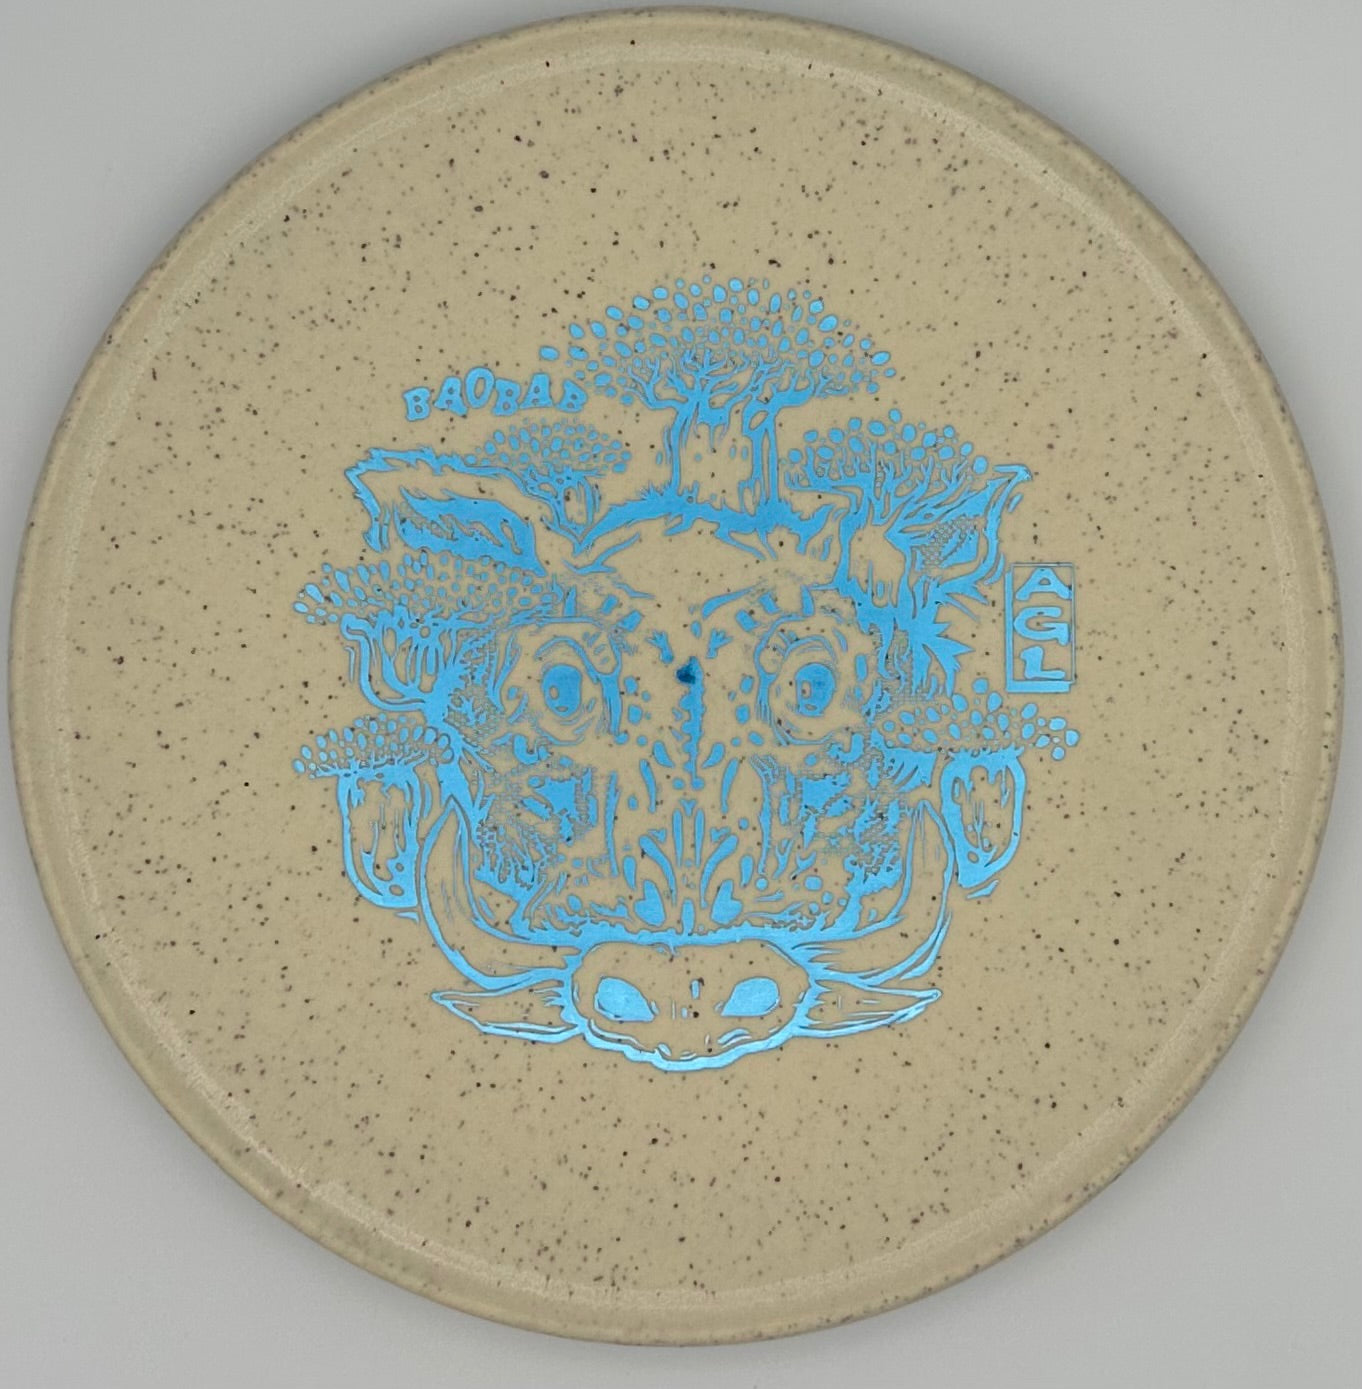 AGL Discs - Cookies and Cream Woodland Hemp Baobab (Warthog Stamp)